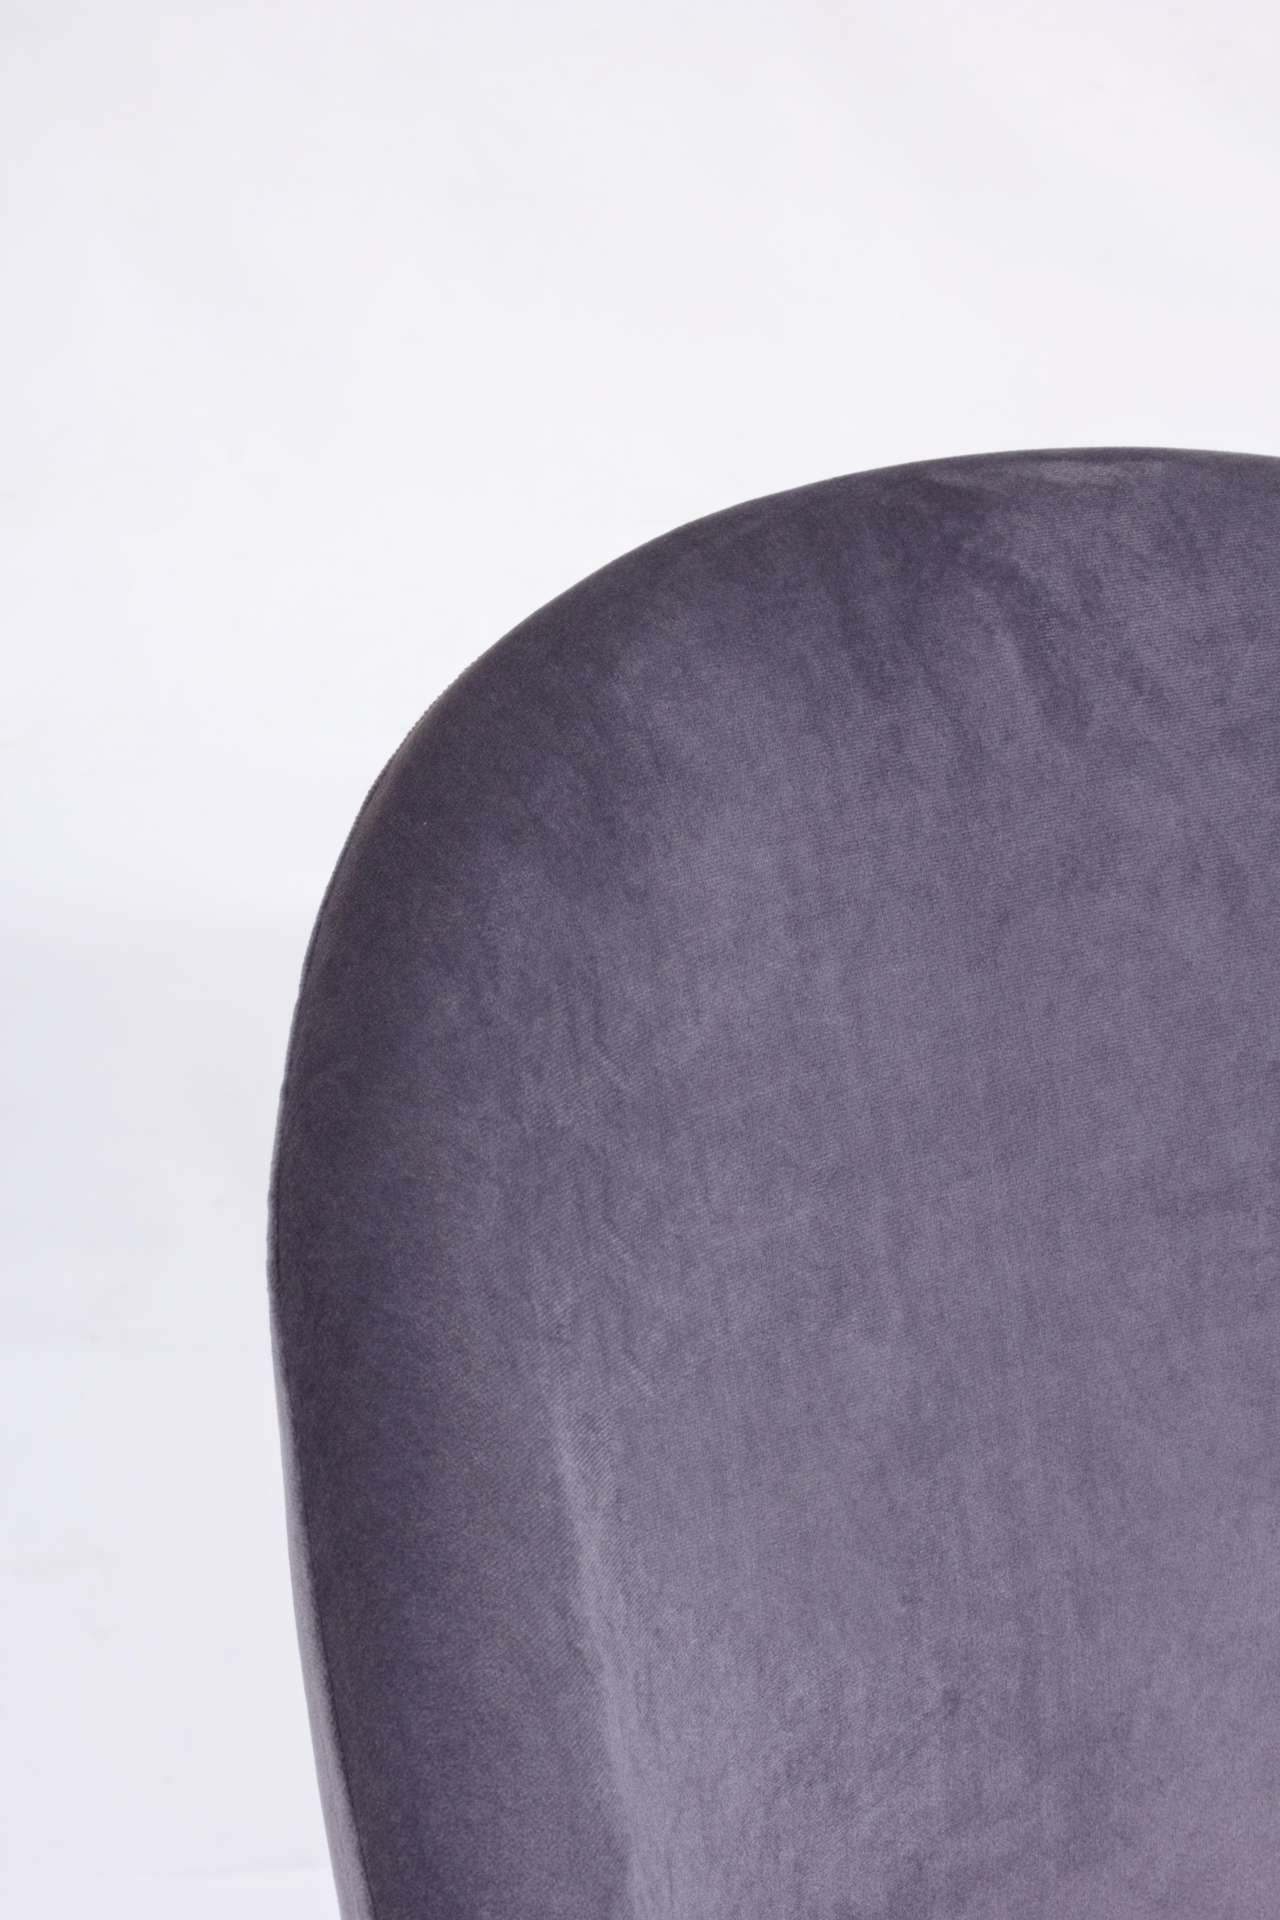 Der Barhocker Carry überzeugt mit seinem moderndem Design. Gefertigt wurde er aus Samt, welches einen dunkelgrauen Farbton besitzt. Das Gestell ist aus Metall und hat eine goldene Farbe. Die Sitzhöhe des Hockers beträgt 74 cm.